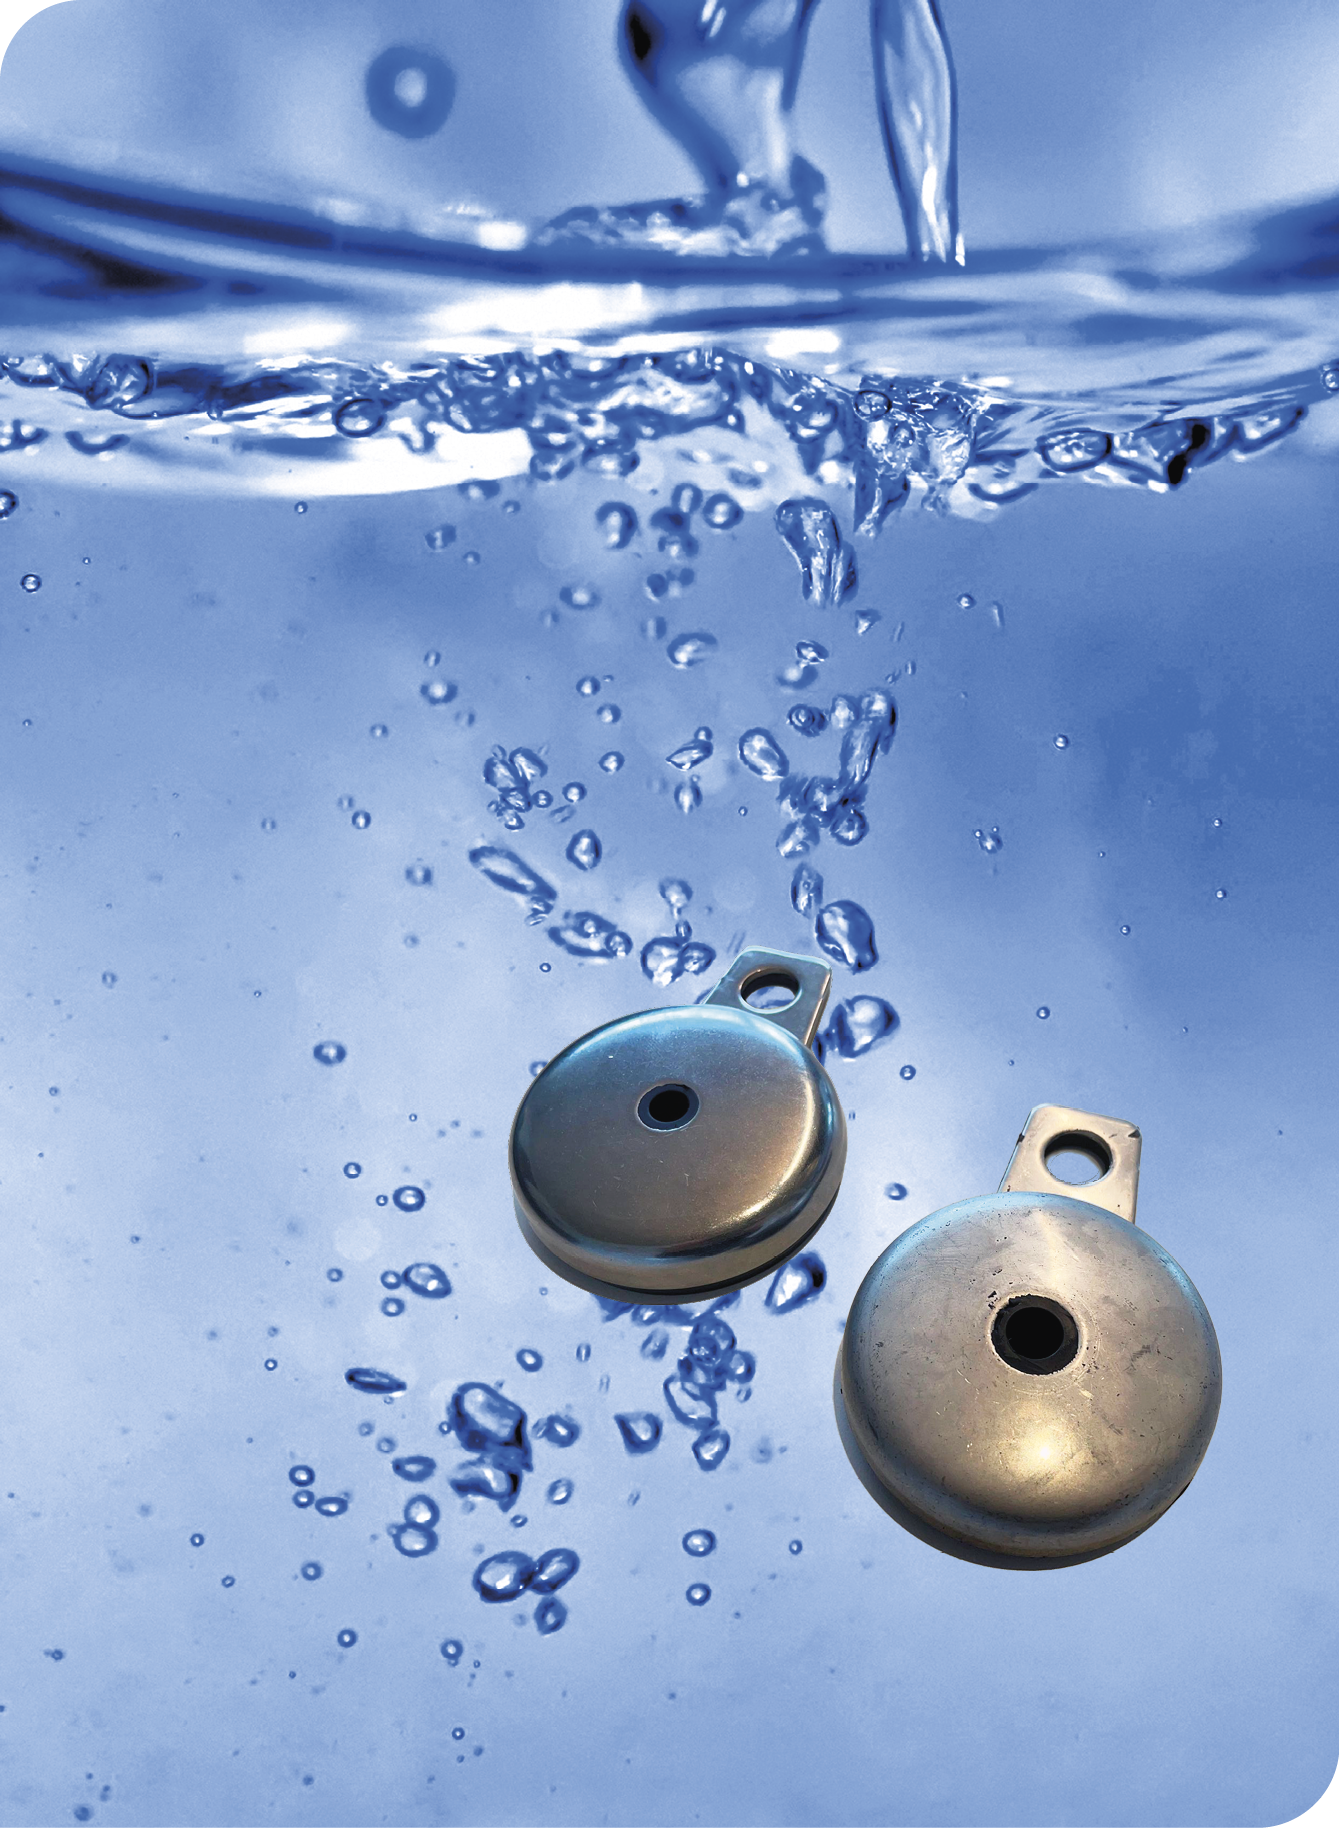 Wiederverwendetes Wasser im Polier- und Schleifprozess